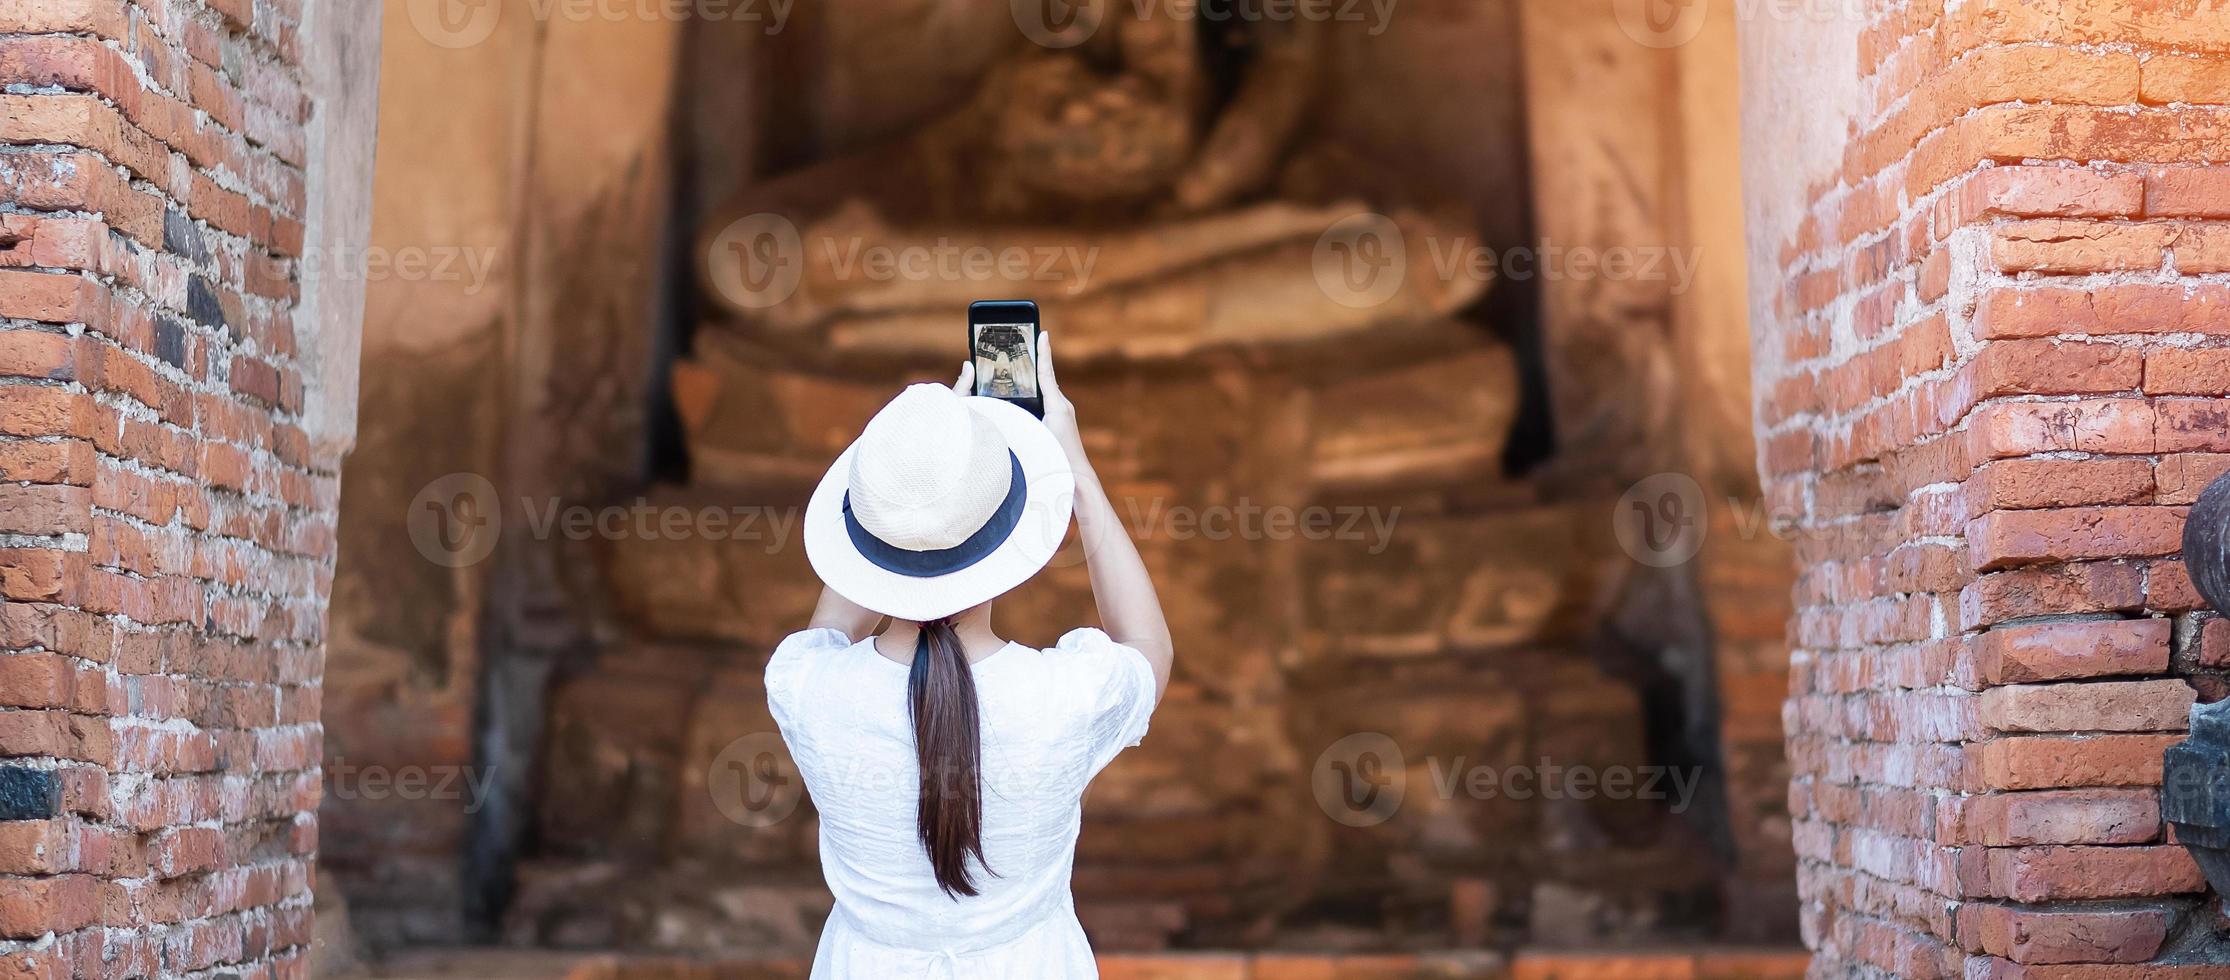 gelukkige toeristische vrouw in witte jurk die foto maakt met mobiele smartphone, tijdens een bezoek aan de wat chaiwatthanaram-tempel in het historische park van Ayutthaya, zomer, solo, Azië en Thailand reisconcept